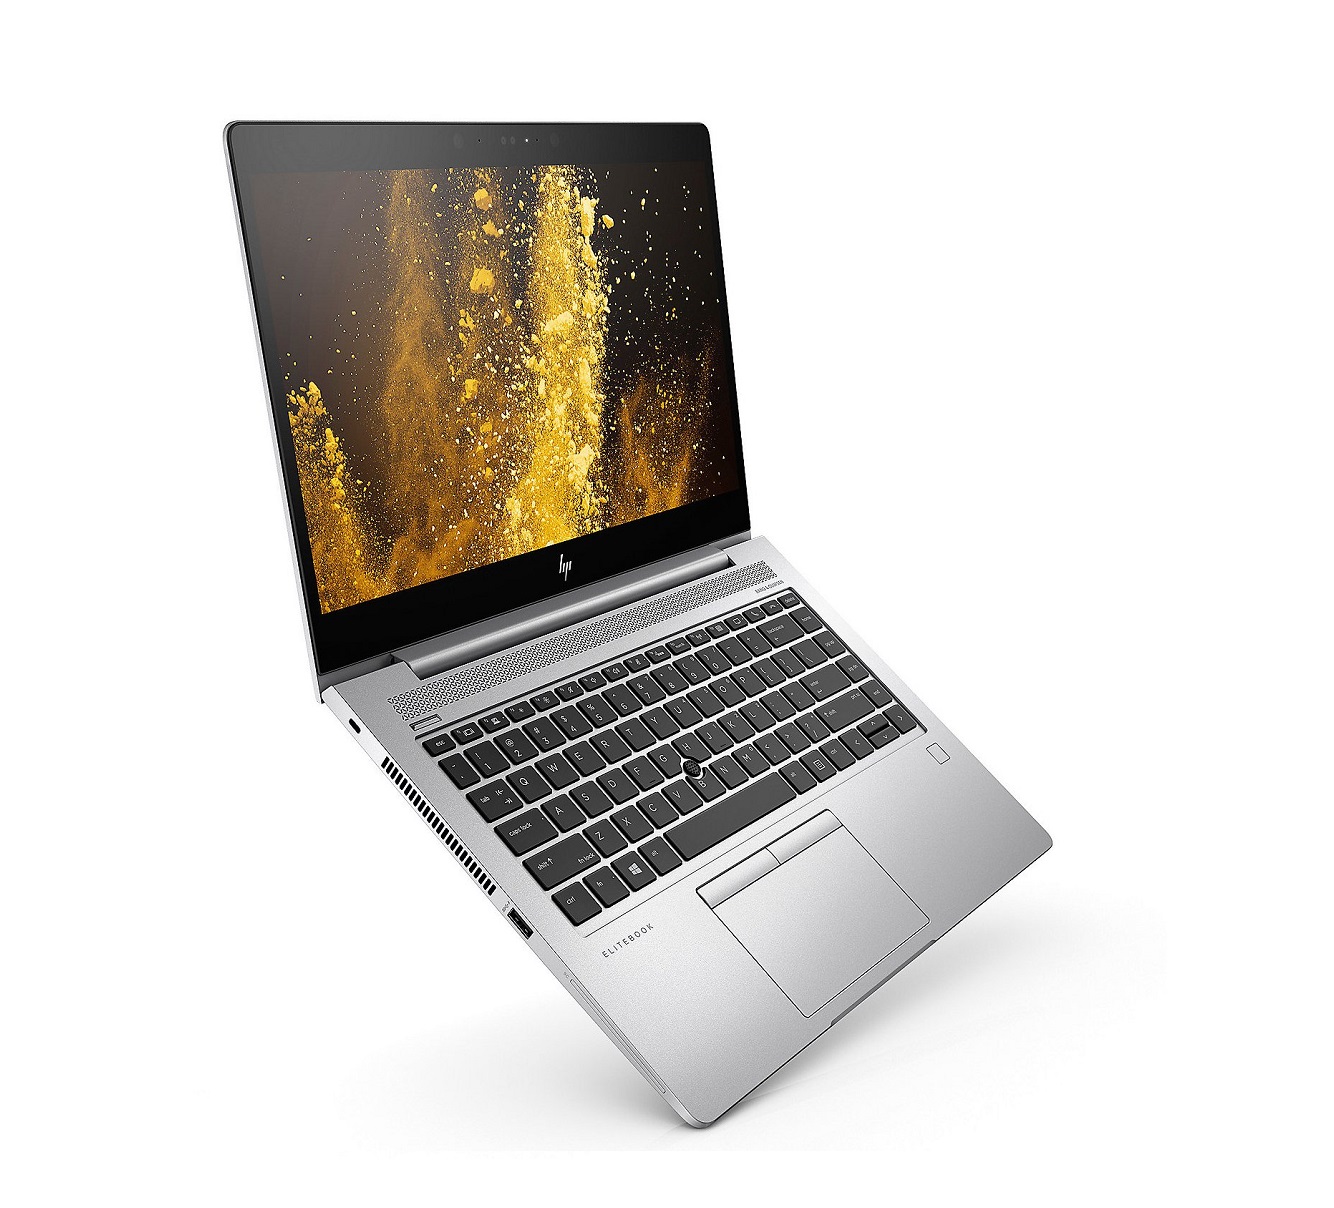 HP EliteBook 830 G5 Nouveau désign de HP i5 7éme gén. - Perfect